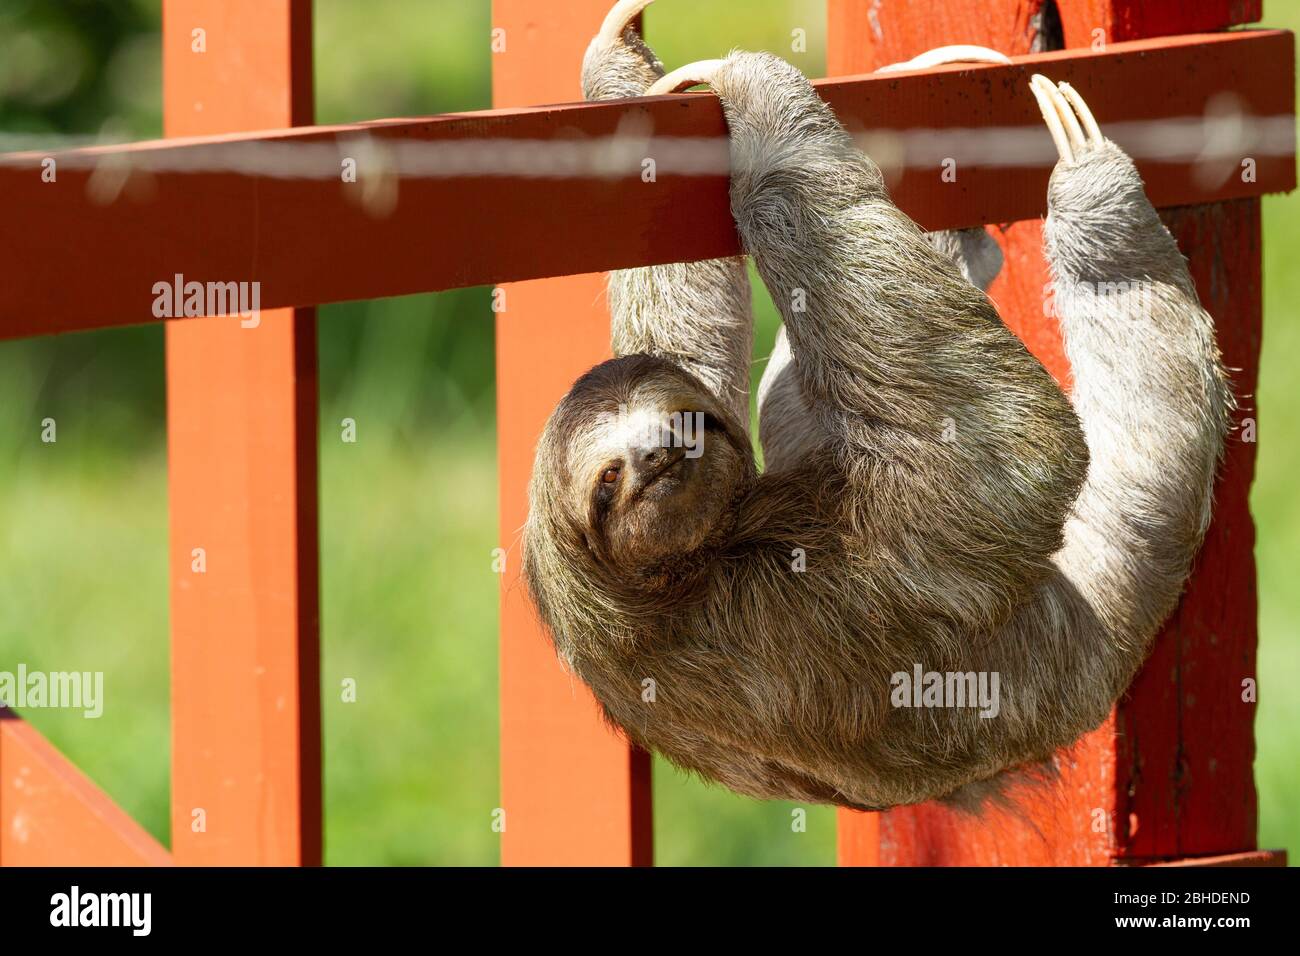 Sloth de tres dedos (Bradypus infuscatus) escalando a lo largo de una valla para ir de árbol en árbol Foto de stock